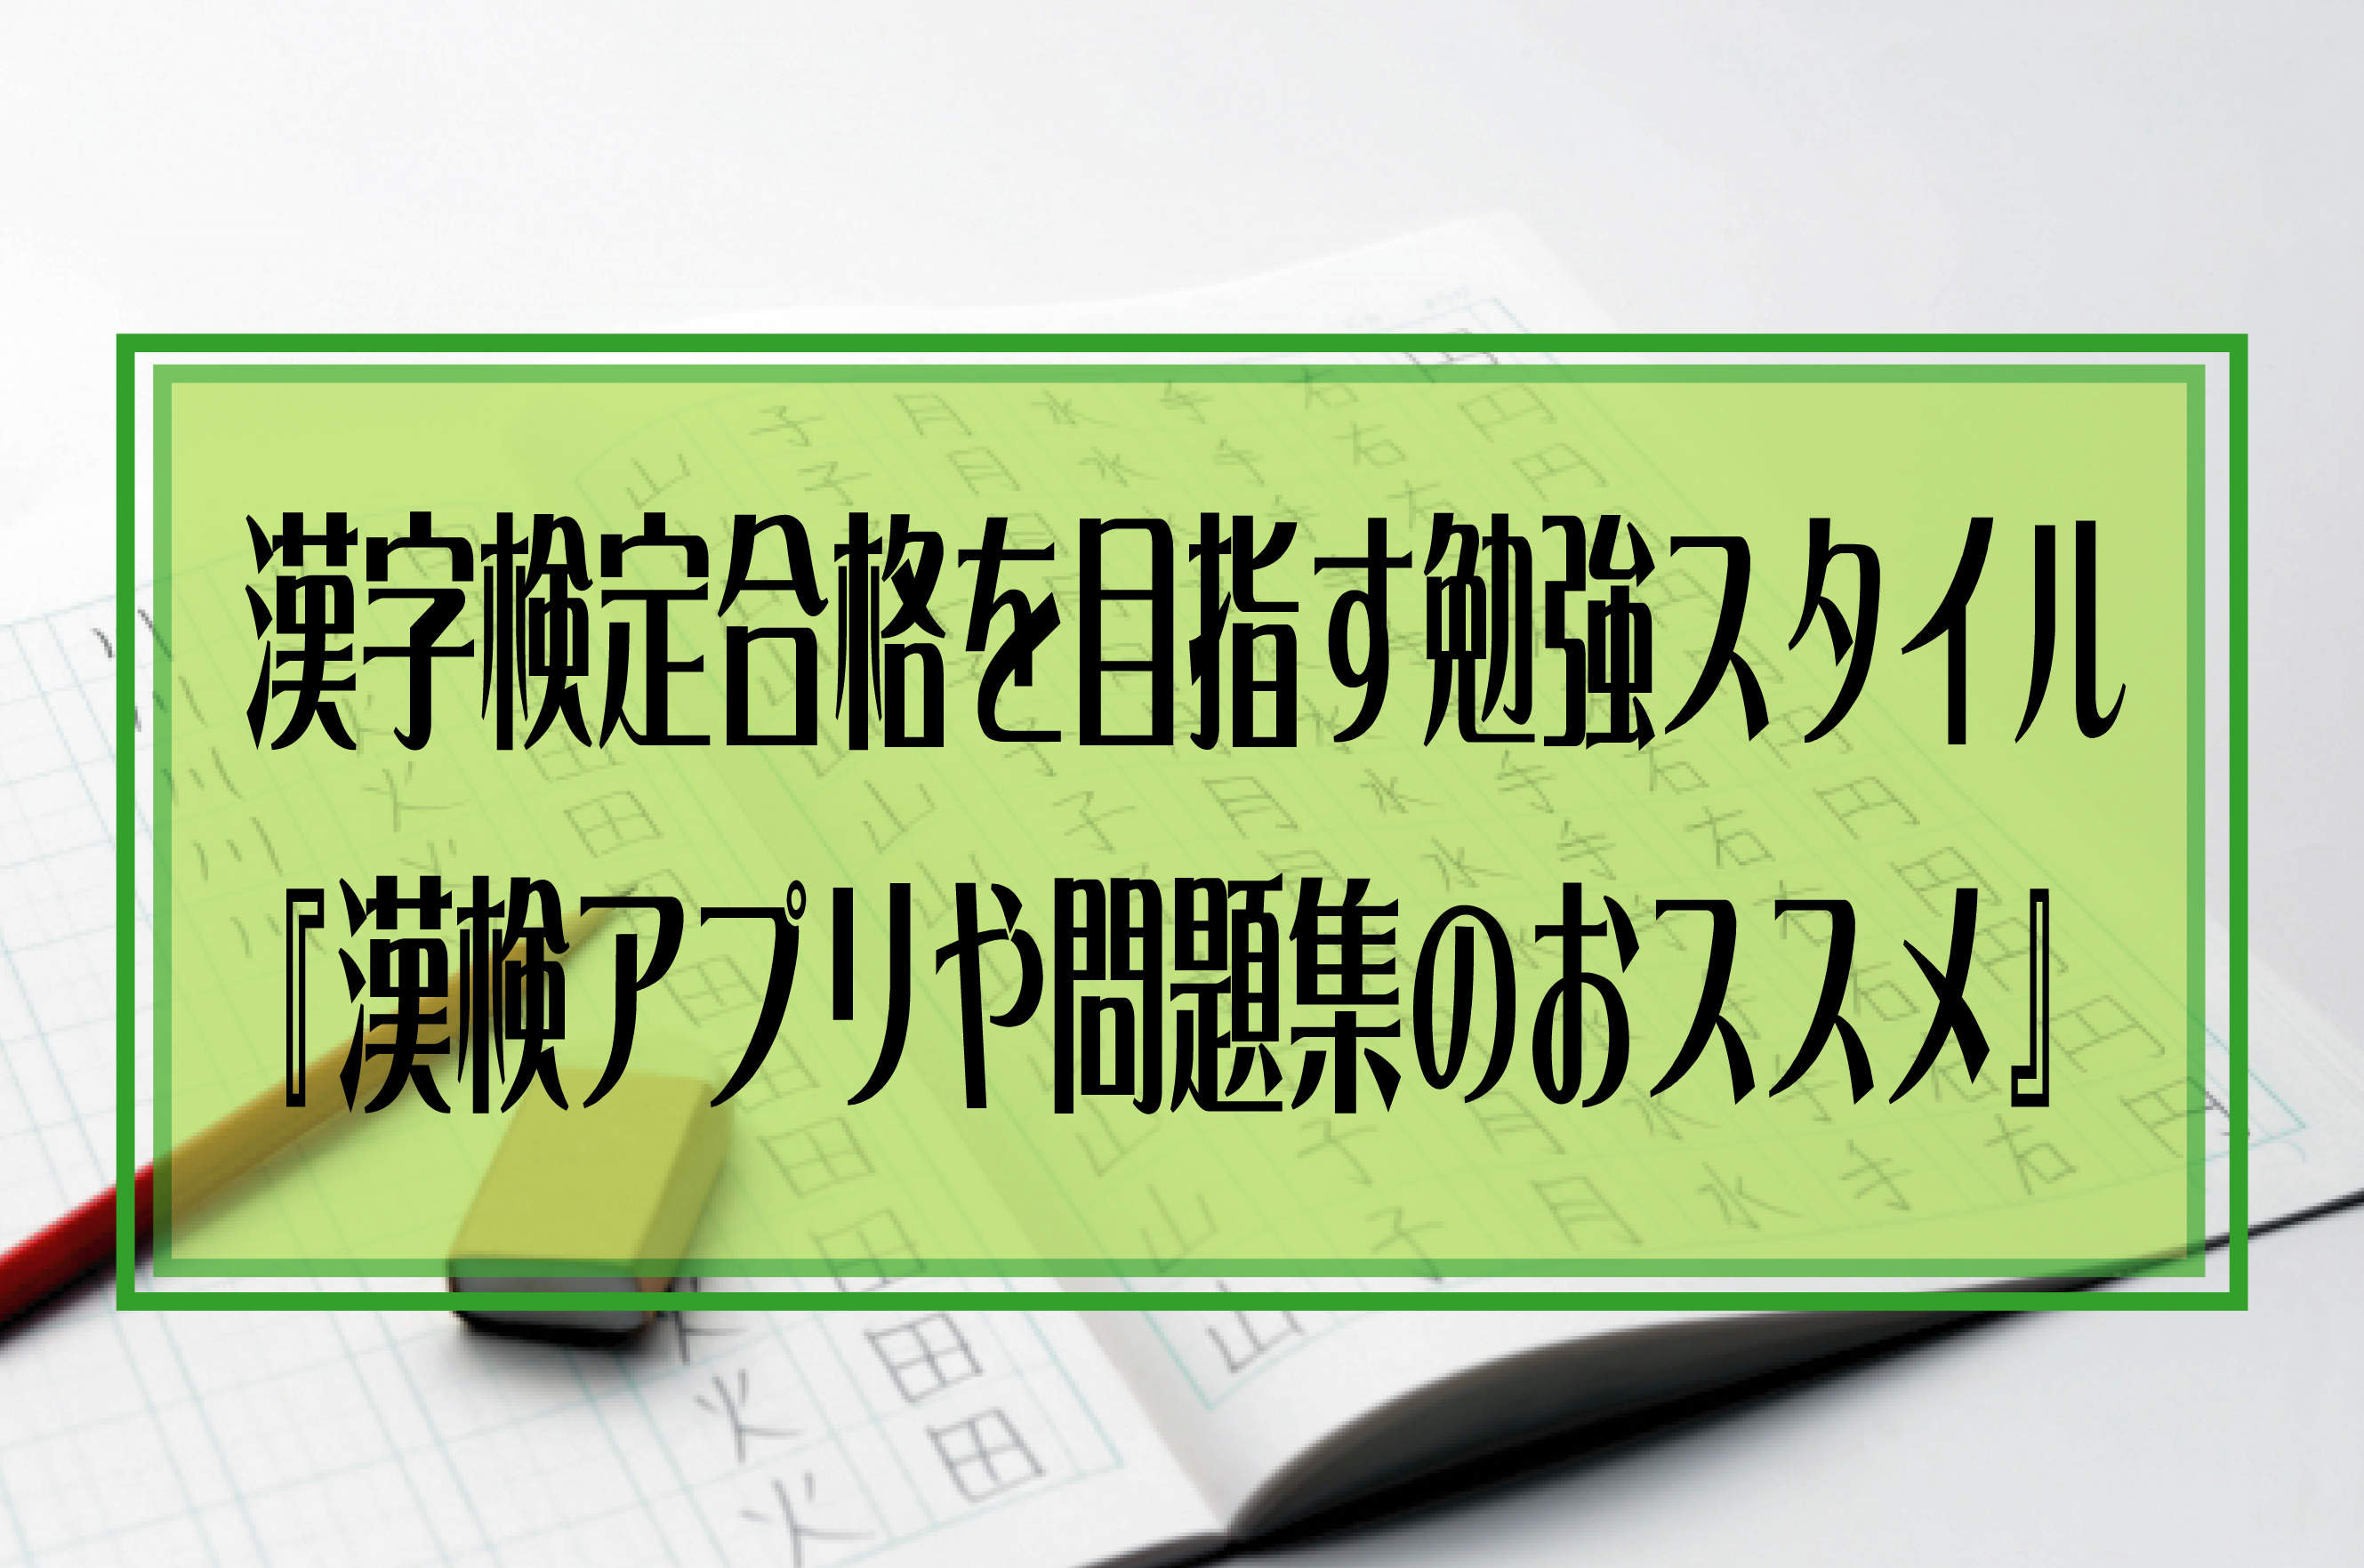 漢字検定合格を目指す勉強スタイル 漢検アプリや問題集のおススメ ロキロビのだいすき